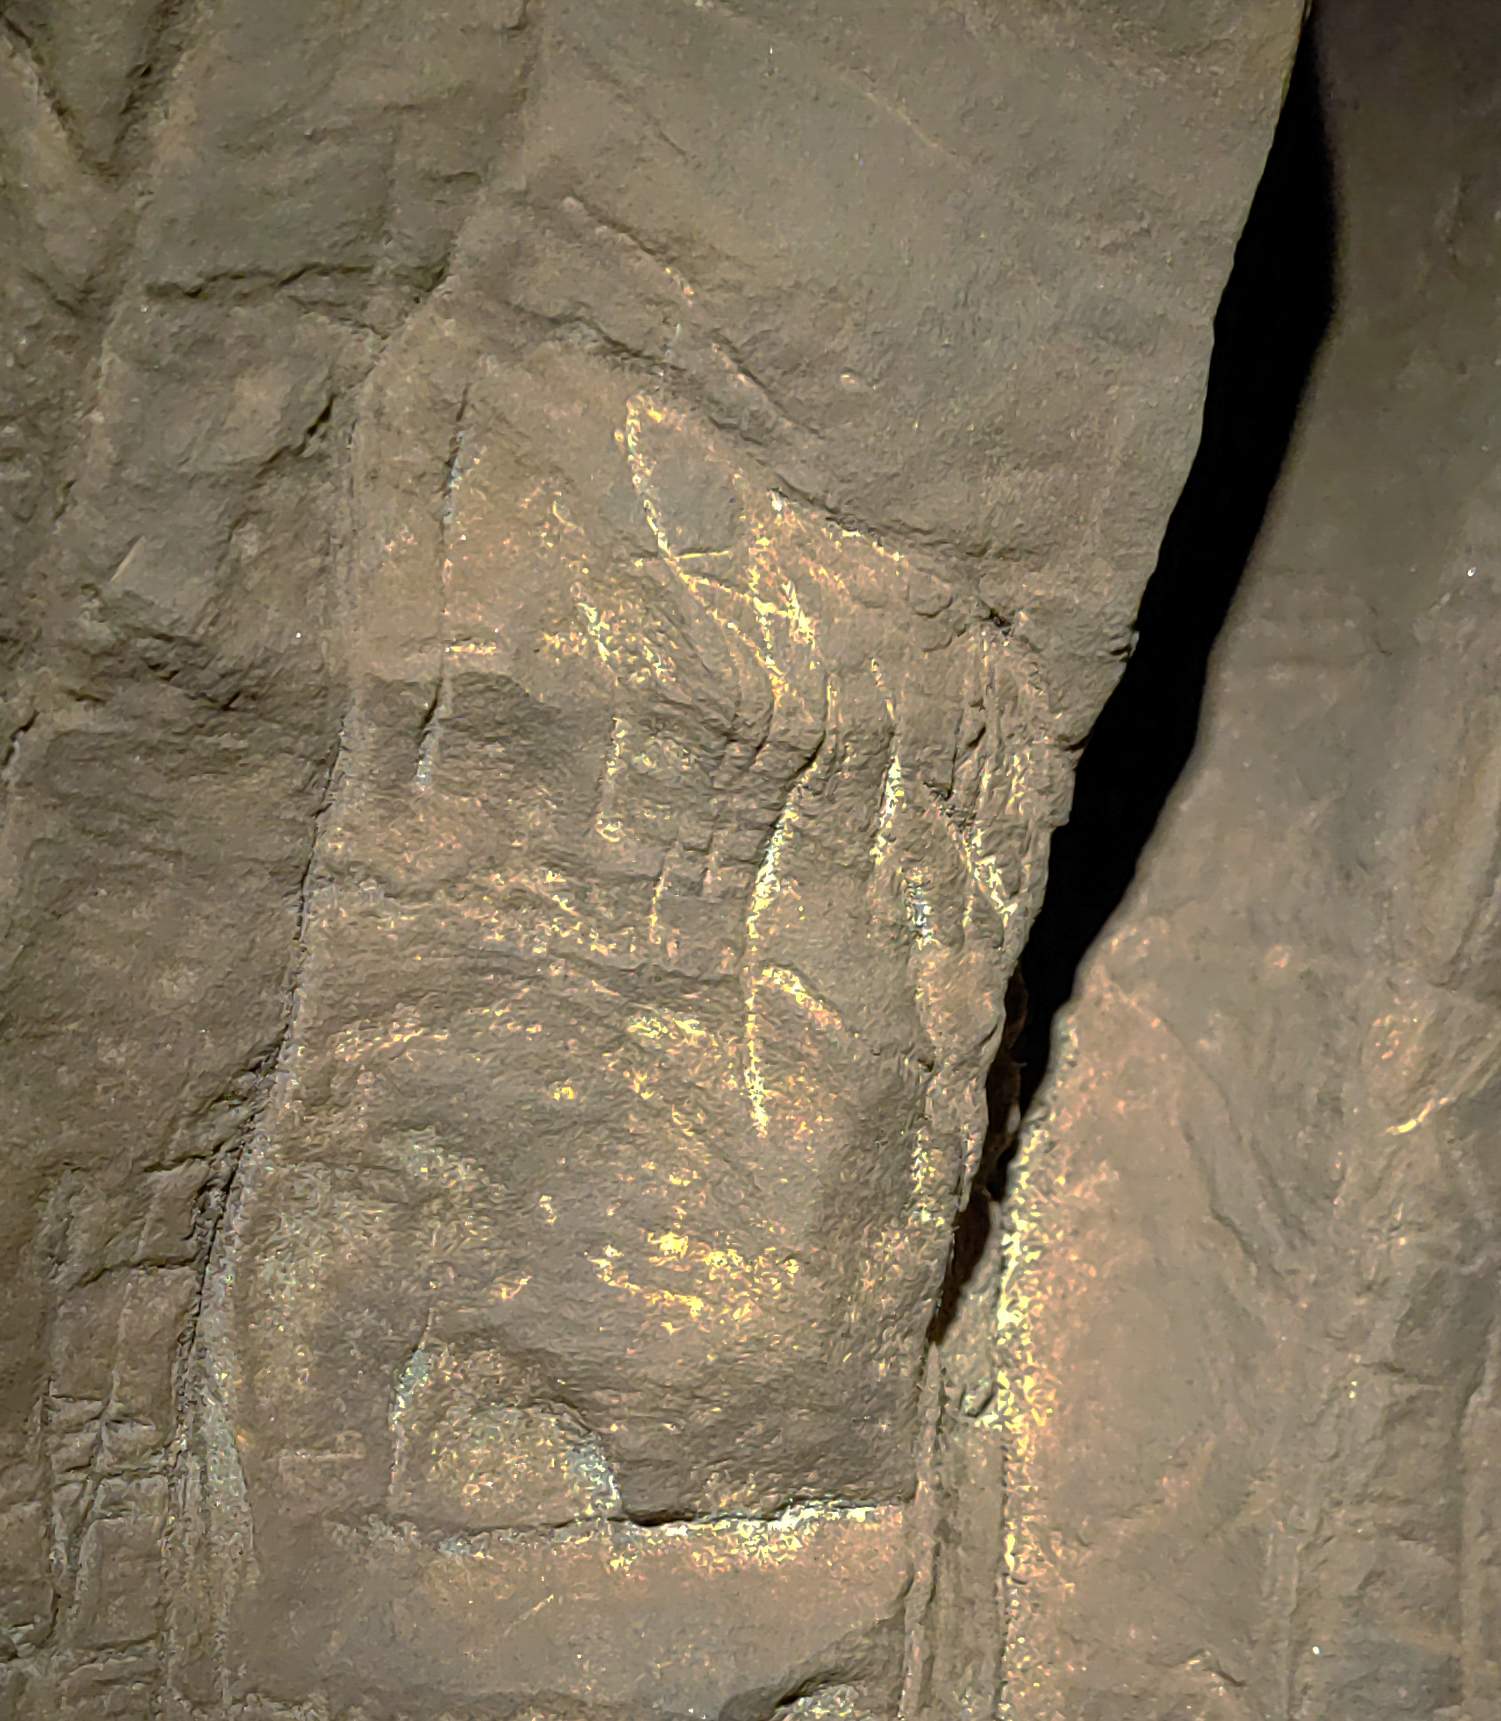 Gravures werden gevonden in de Hill Antechamber grafkamer, zoals een omgekeerde kruisvorm. Er is ook een materiaal over het oppervlak aangebracht om de niet-geometrische afbeeldingen bij weinig licht te benadrukken, hoewel dit nog niet is geanalyseerd.